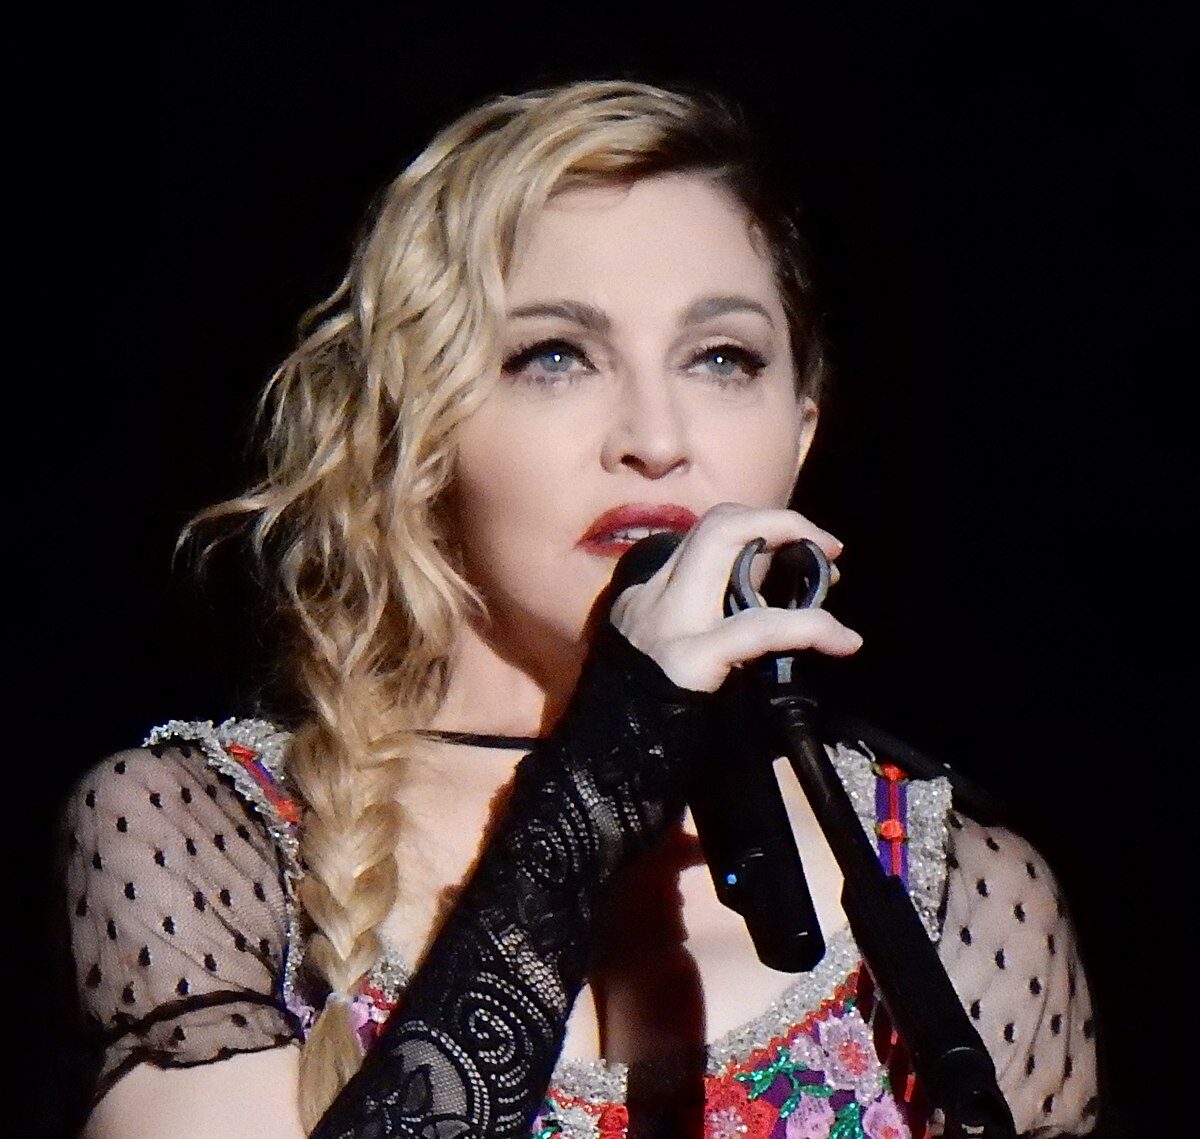 Danh ca Madonna là biểu tượng của rất nhiều ca sĩ trẻ hiện nay